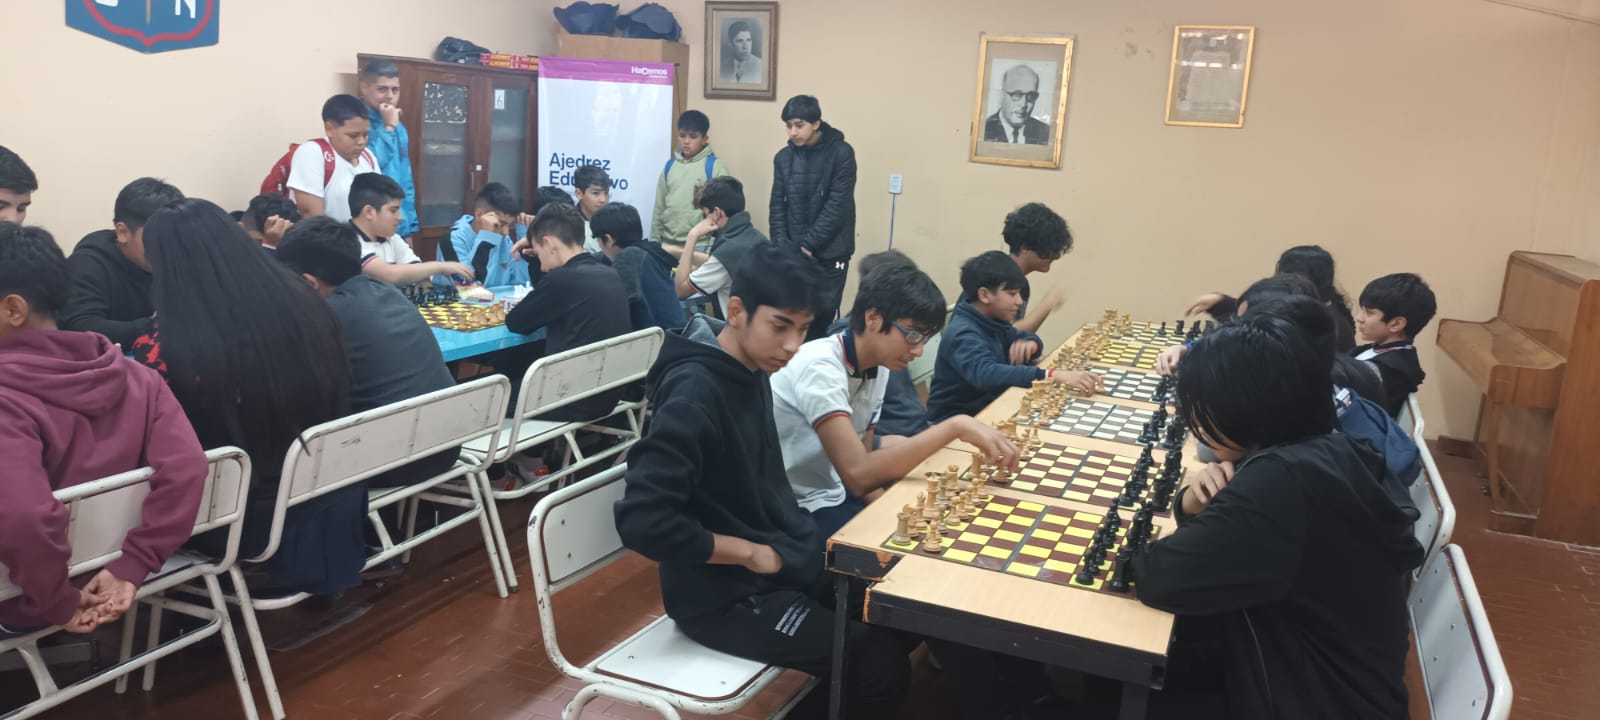 Encuentro escolar de ajedrez en la Secundaria N35